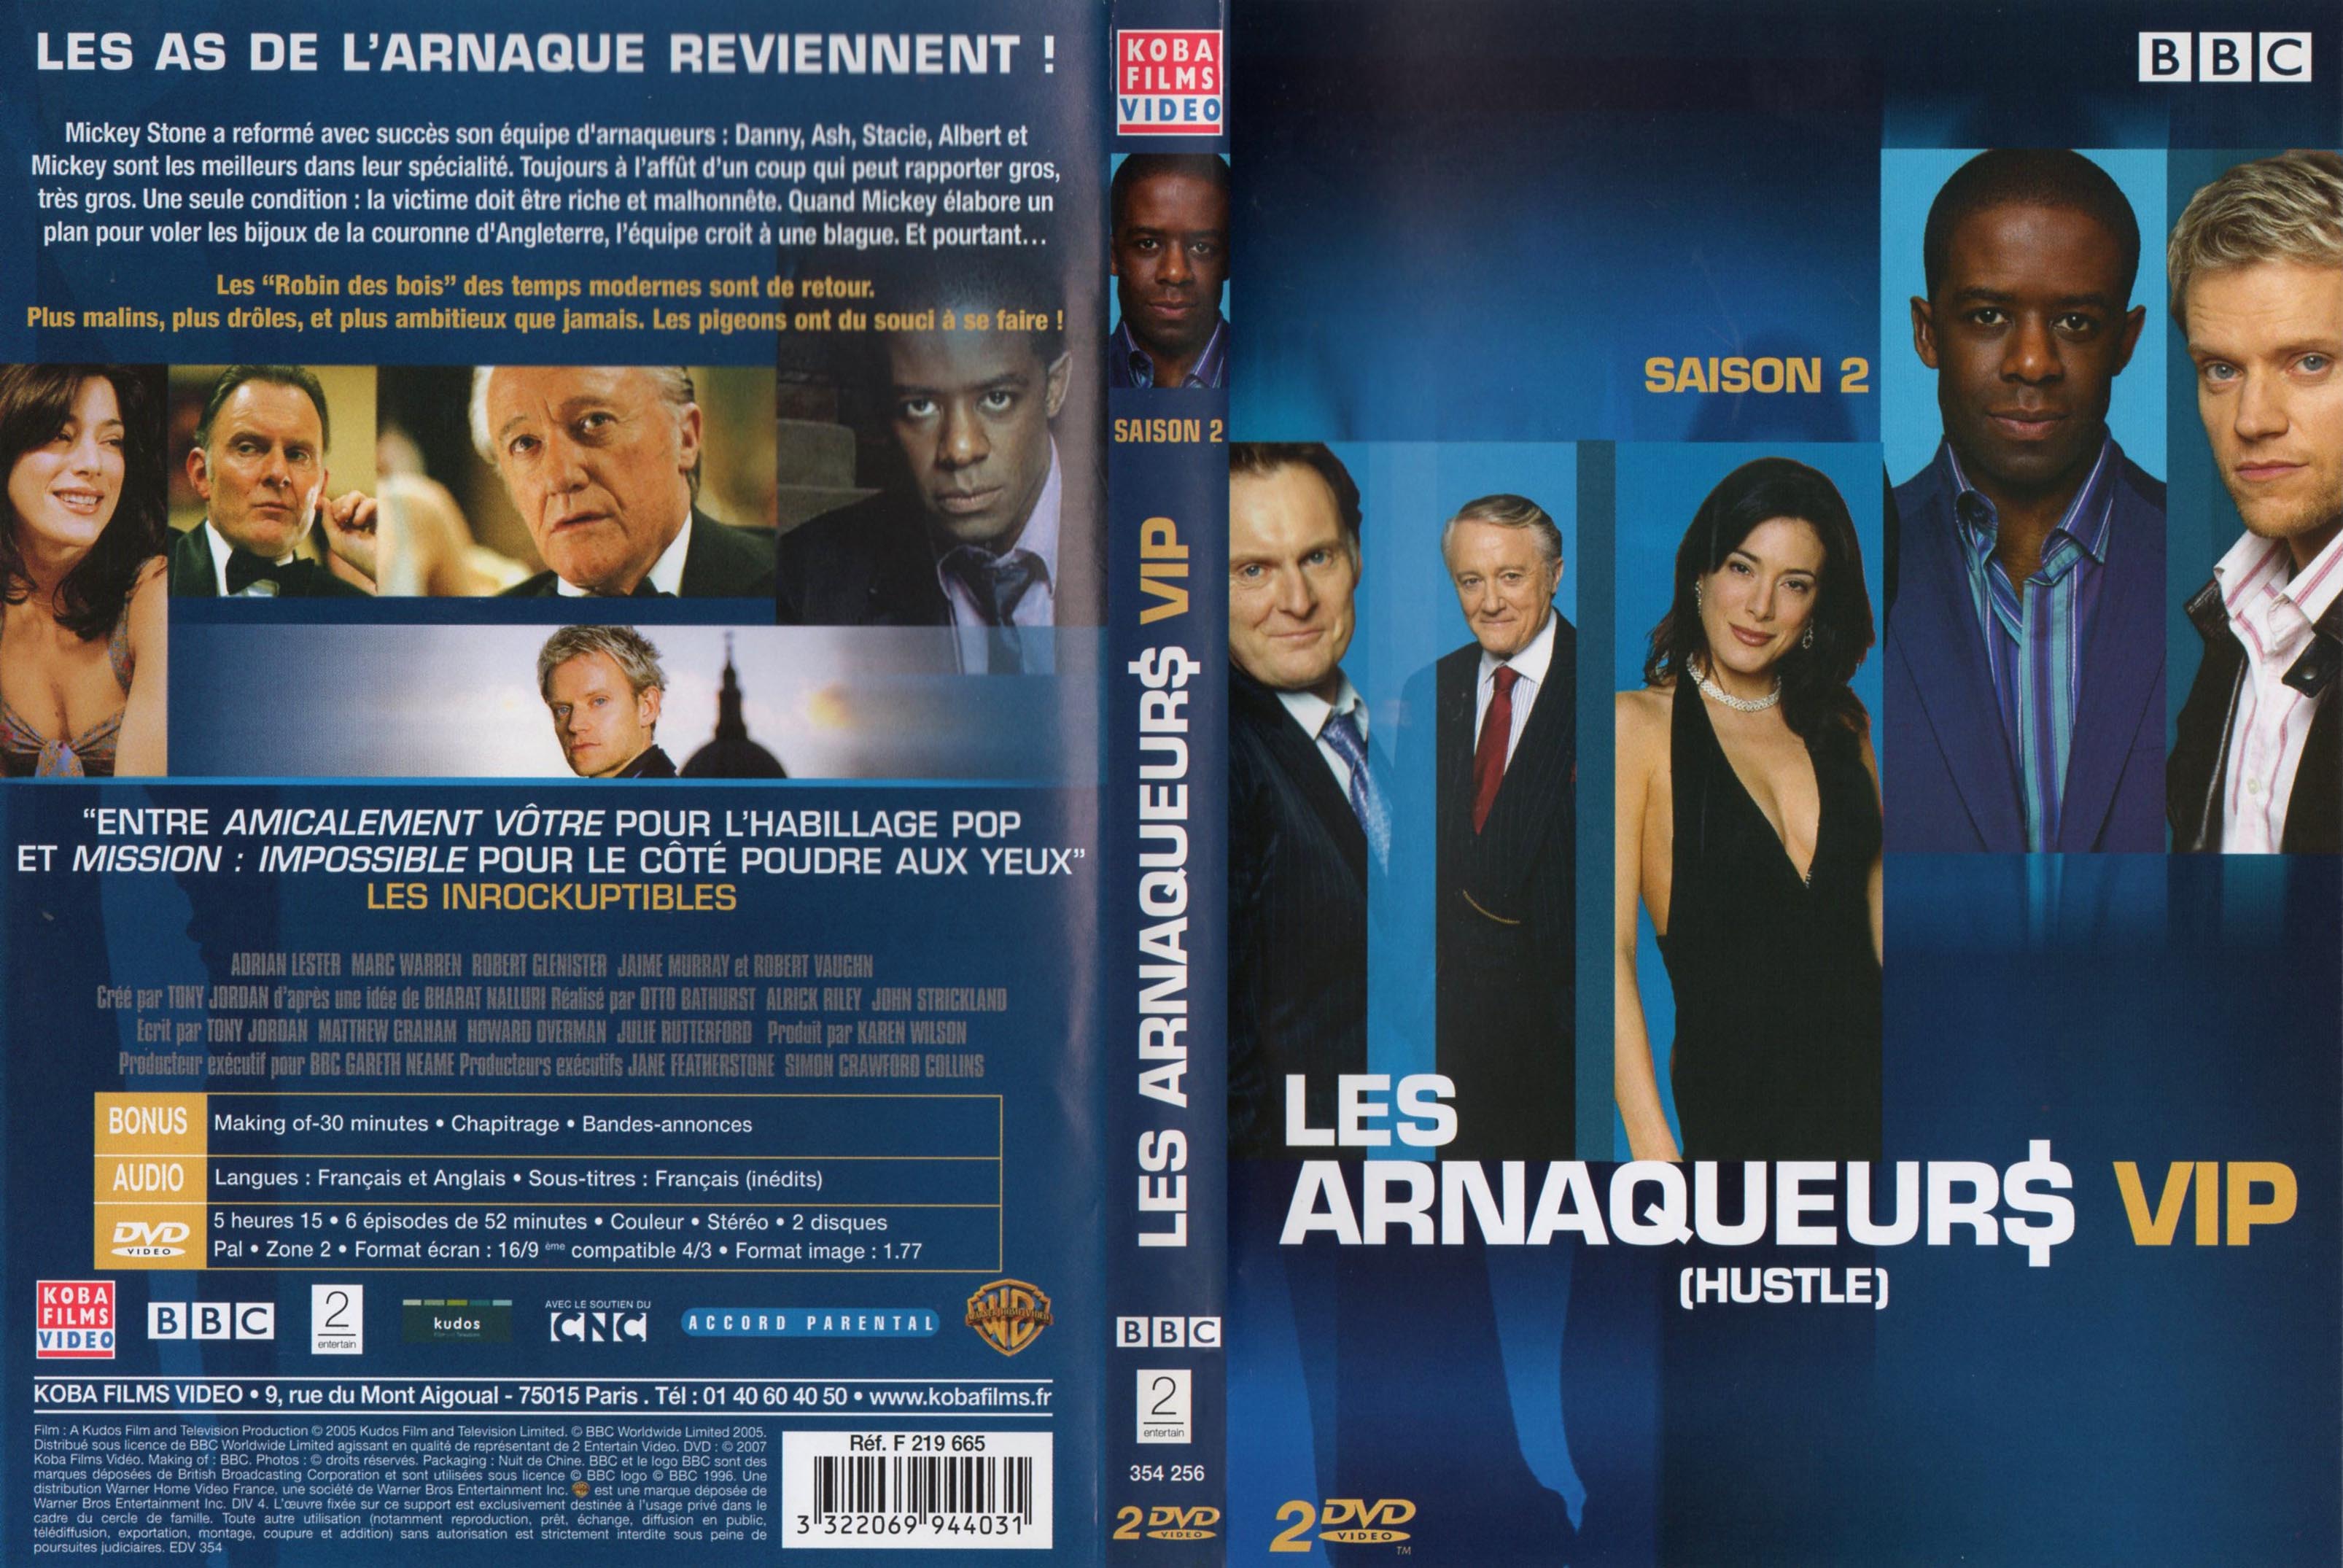 Jaquette DVD Les arnaqueurs VIP saison 2